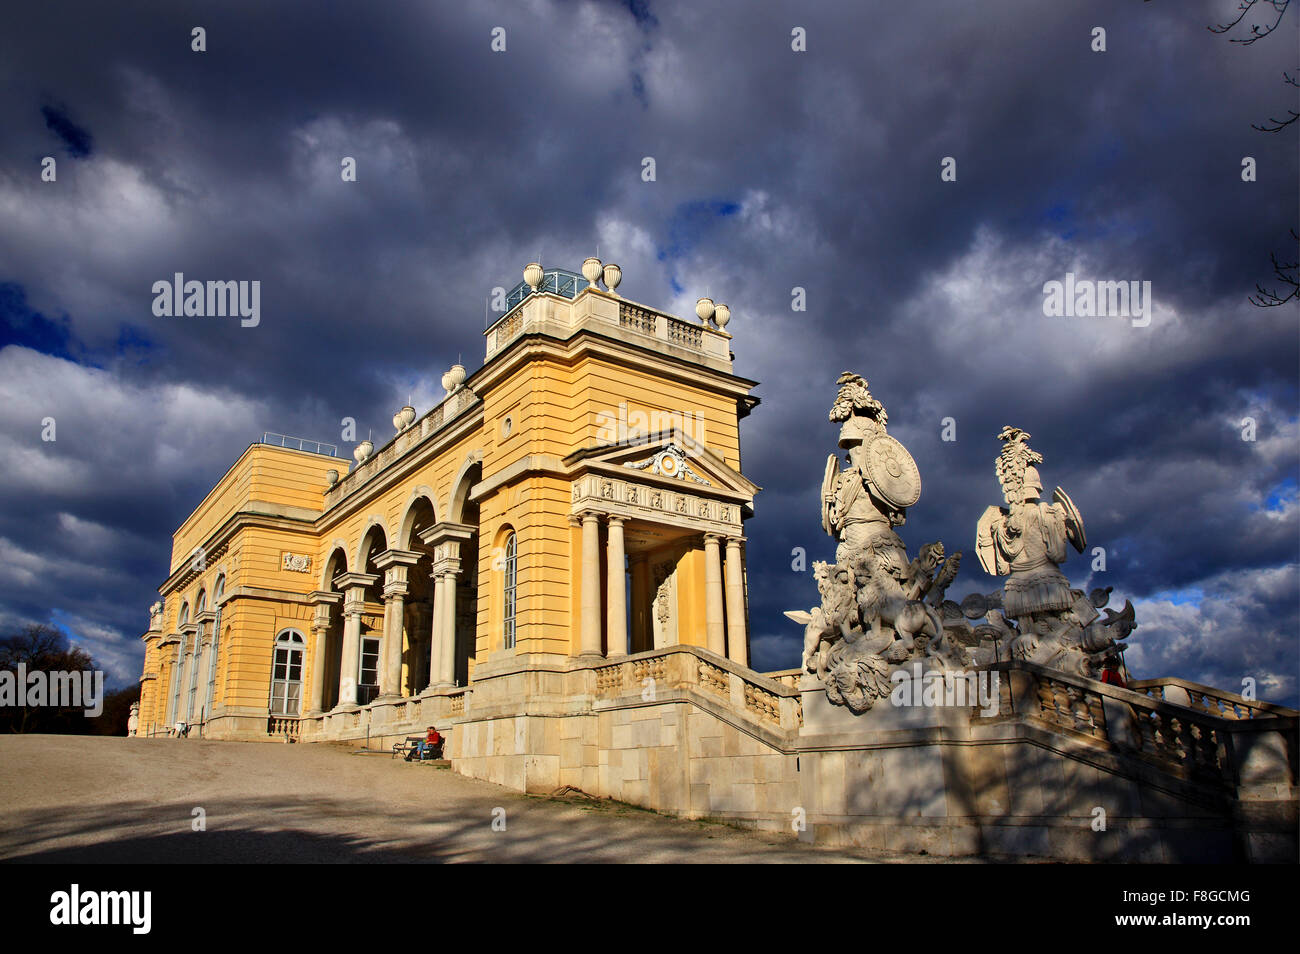 La Gloriette, el mirador del palacio de Schönbrunn, Viena, Austria. Foto de stock